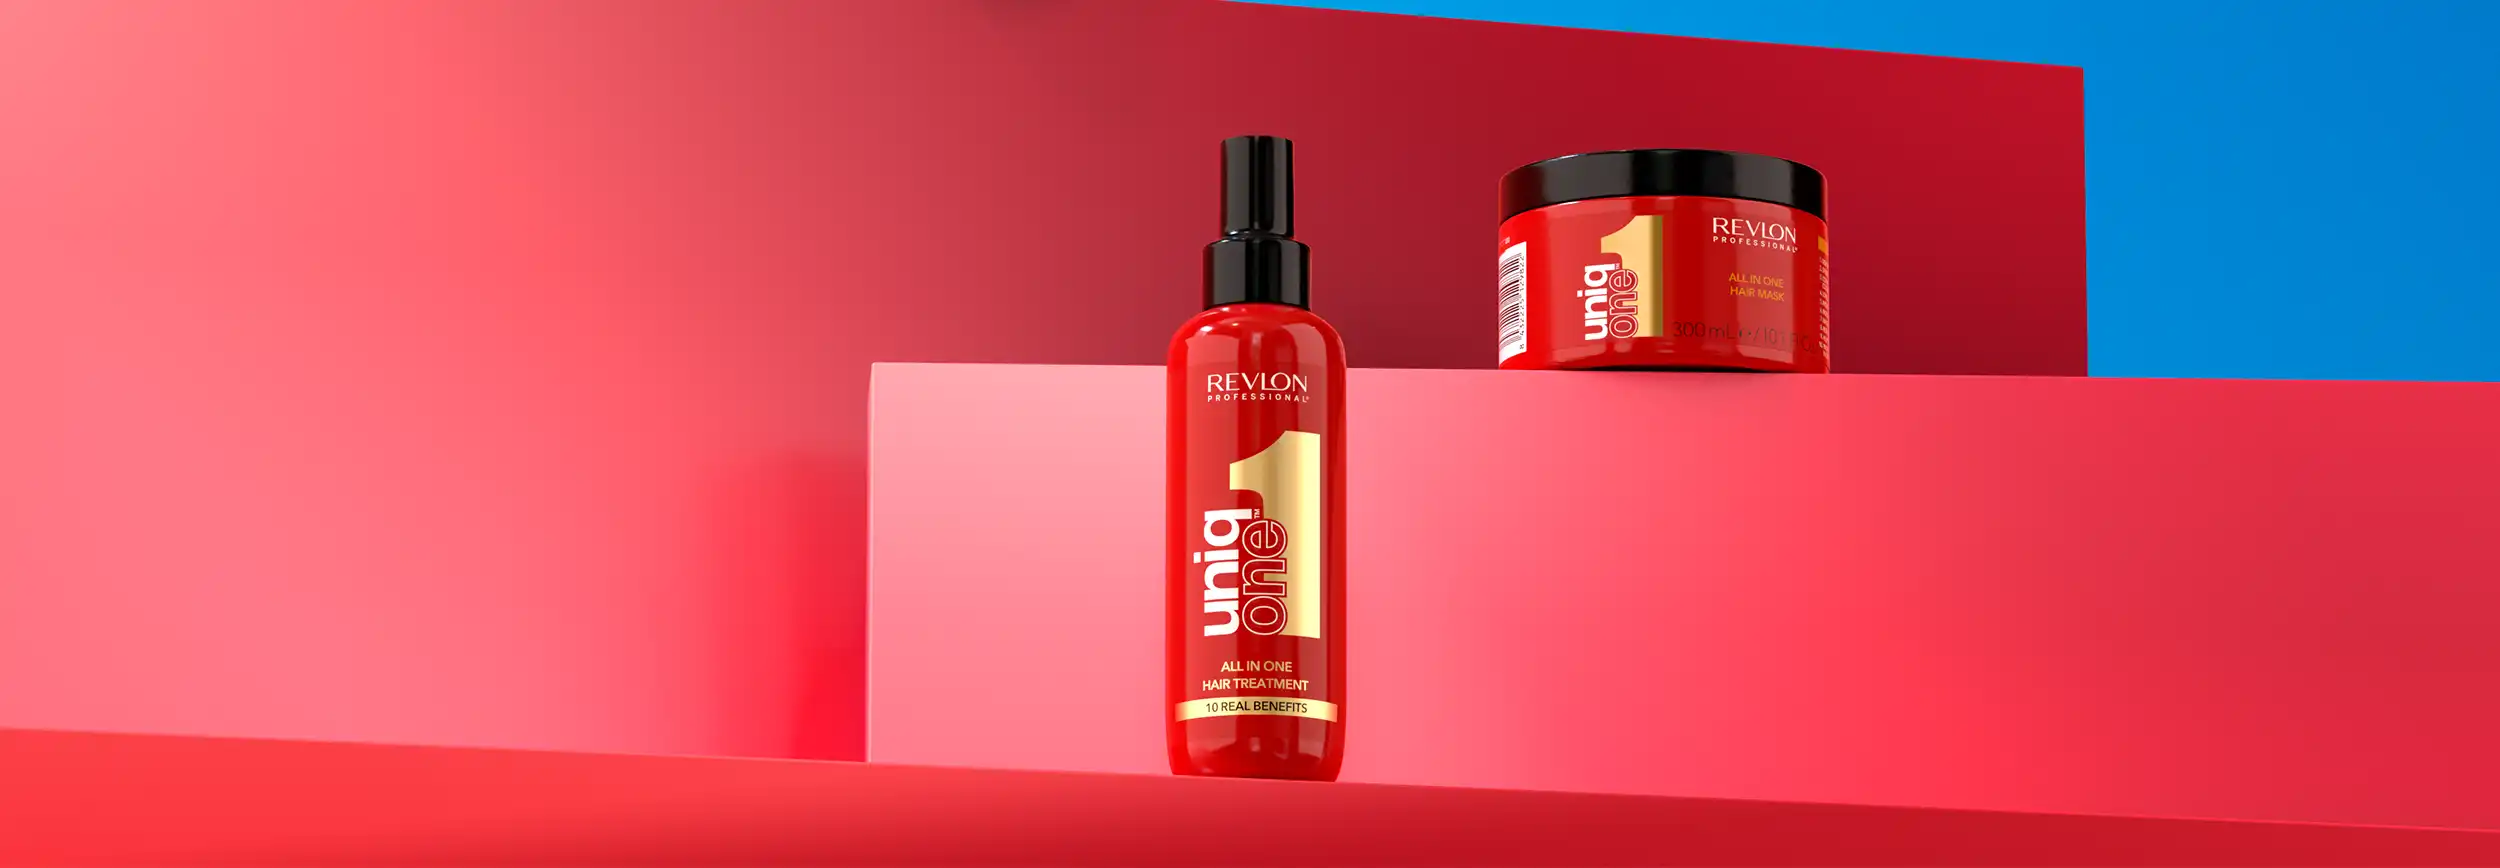 UniqOne: Die Haarkur, die Ihr Haar wiederherstellt - Revlon Professional